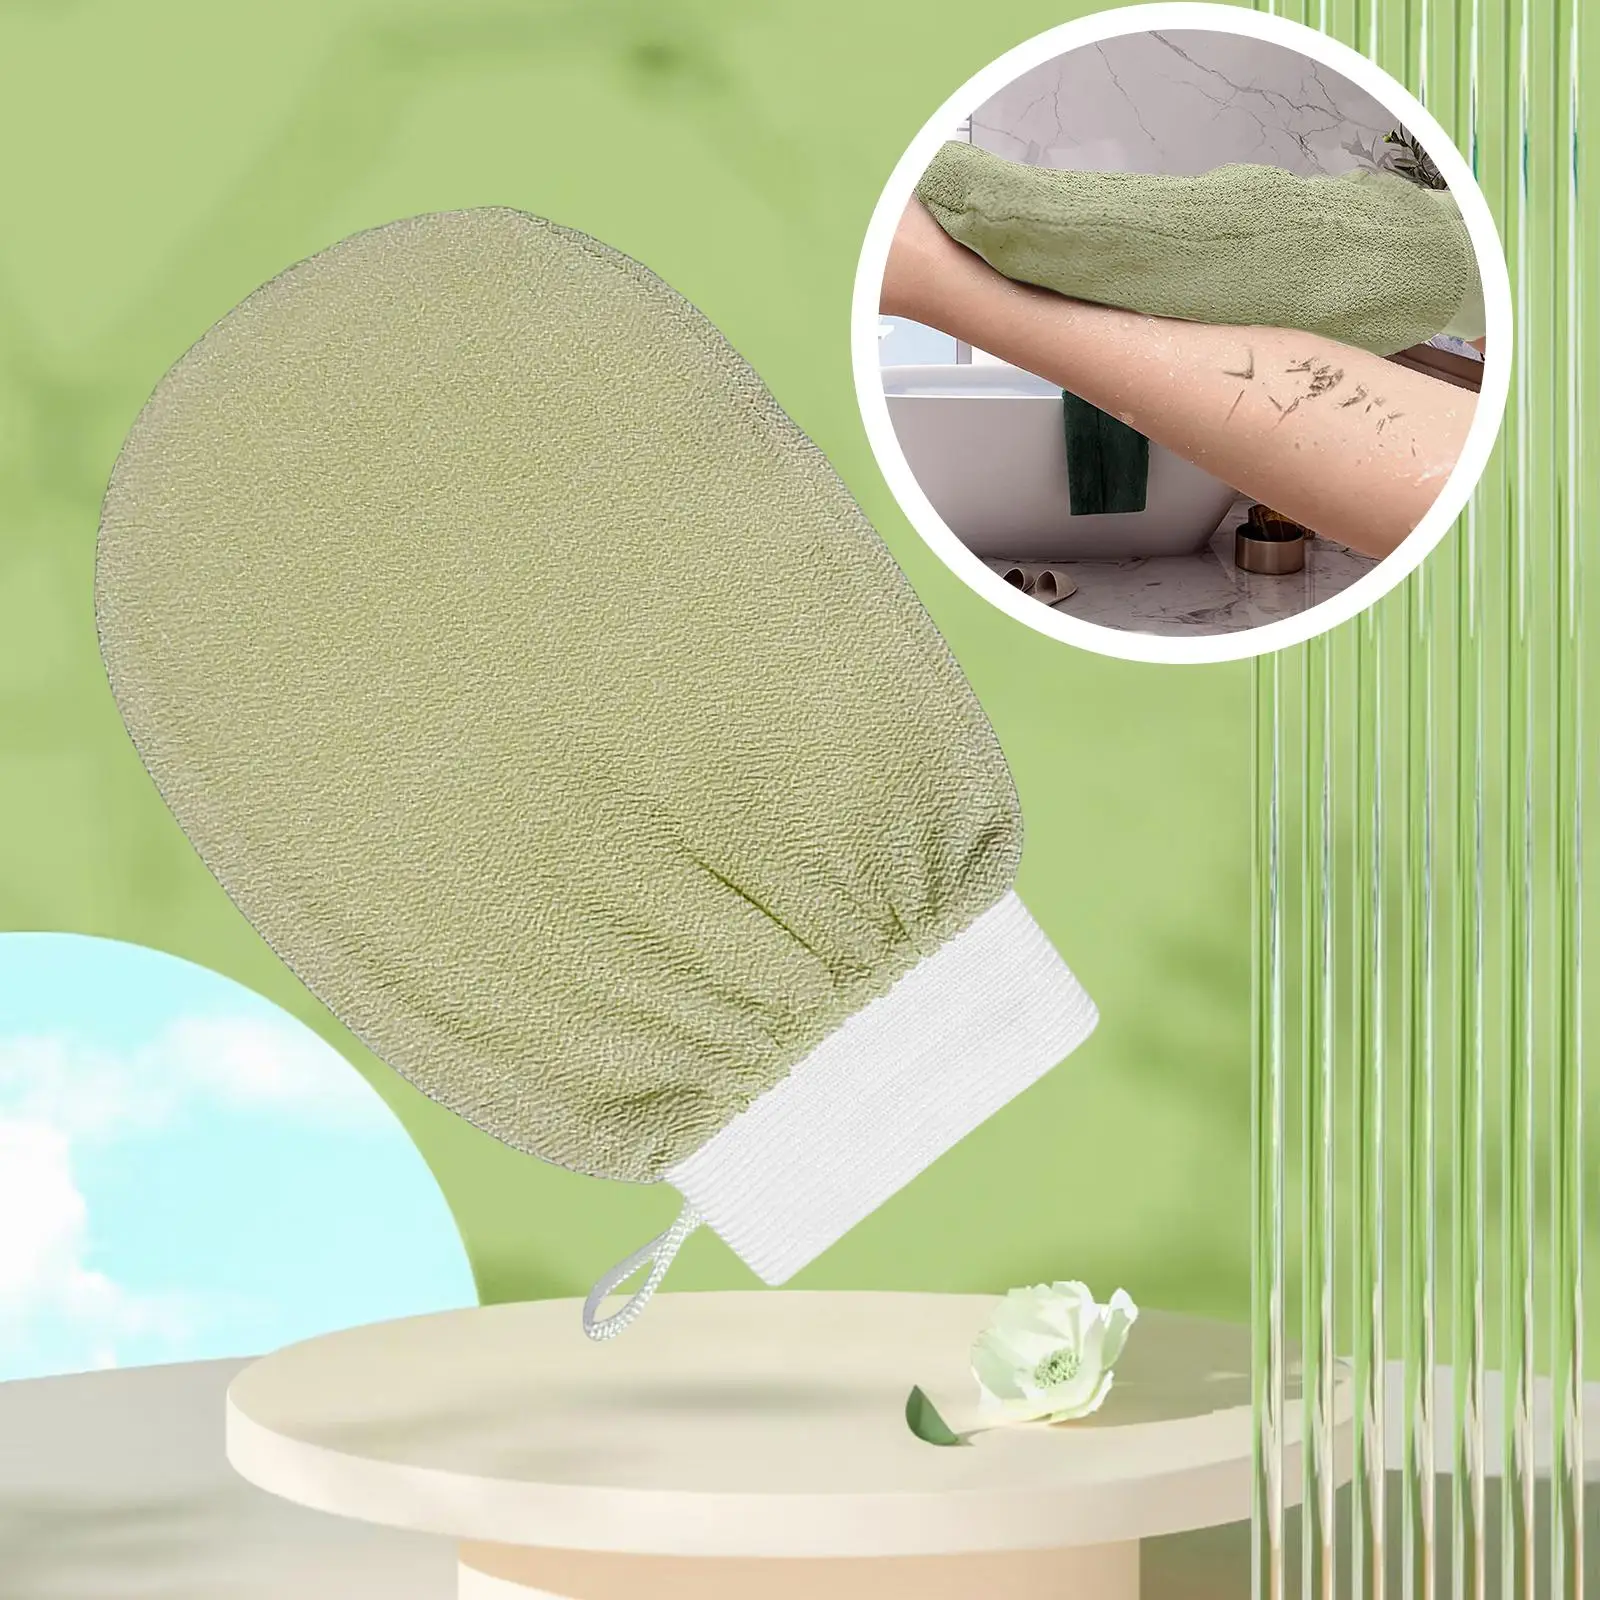 Bath Glove Scrubbing Gloves Skin Cleanser Shower Gloves for Bath Shower